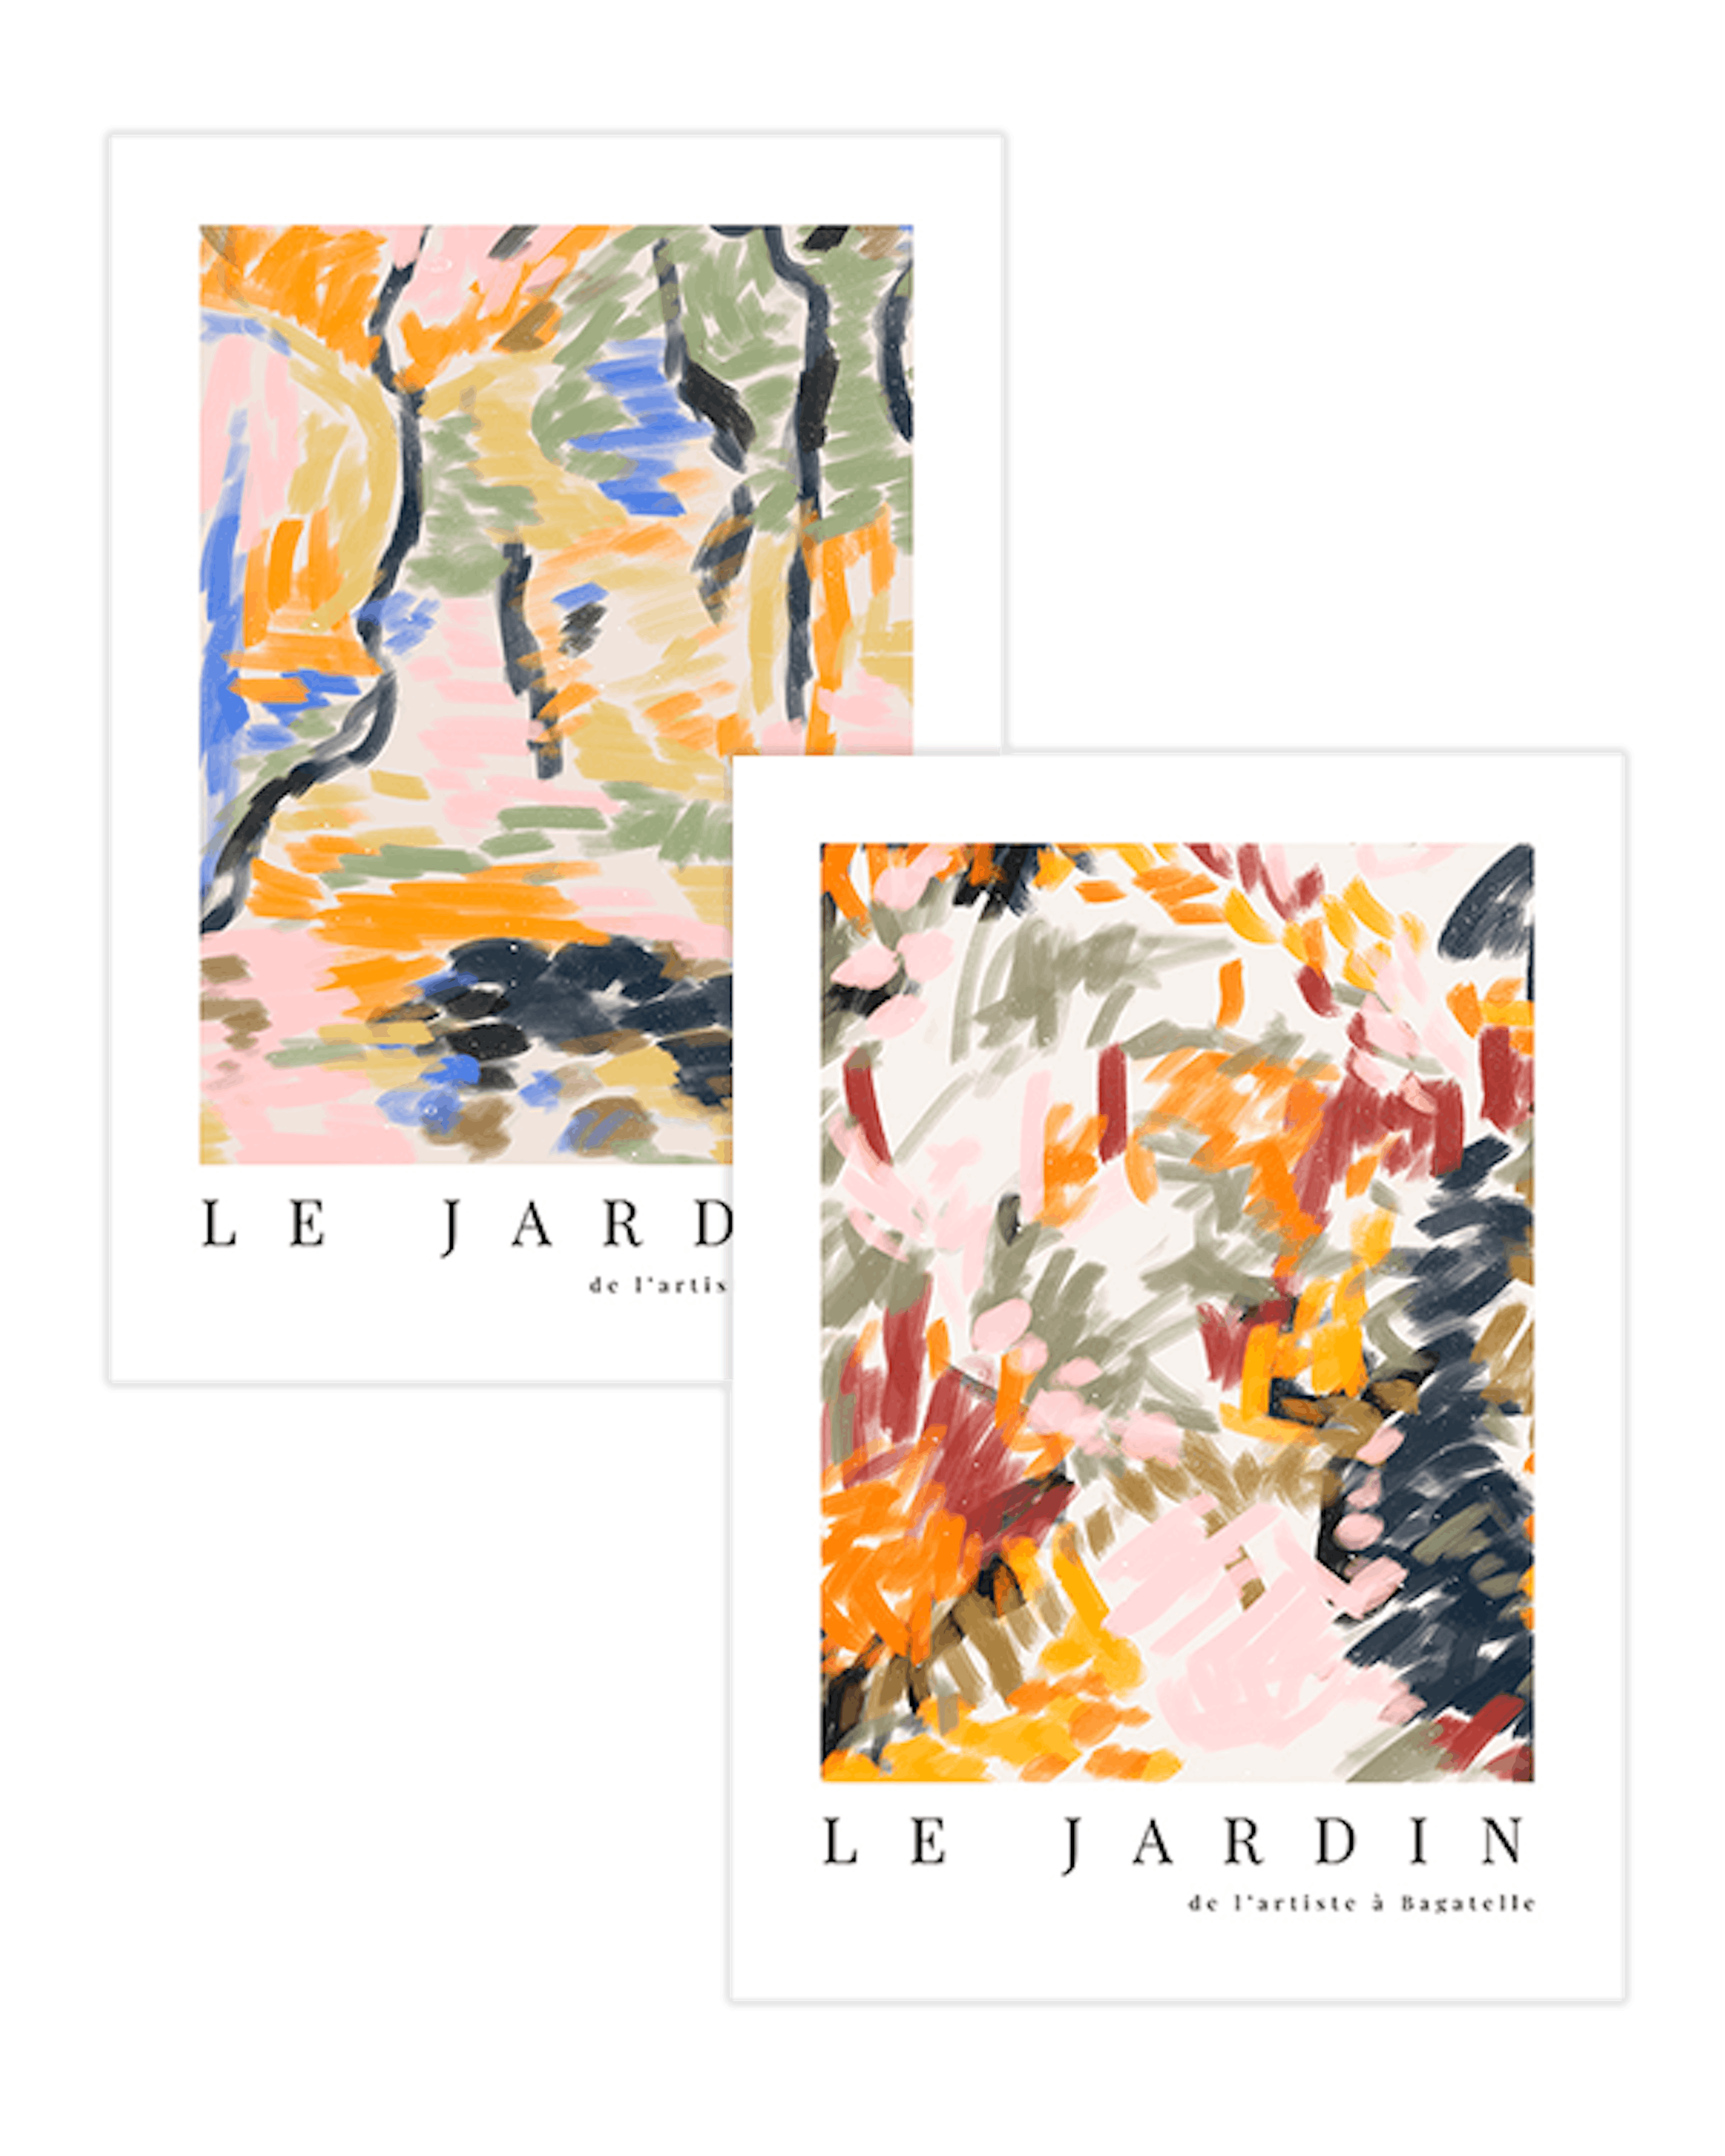 Le Jardin Duo Plakatpakke